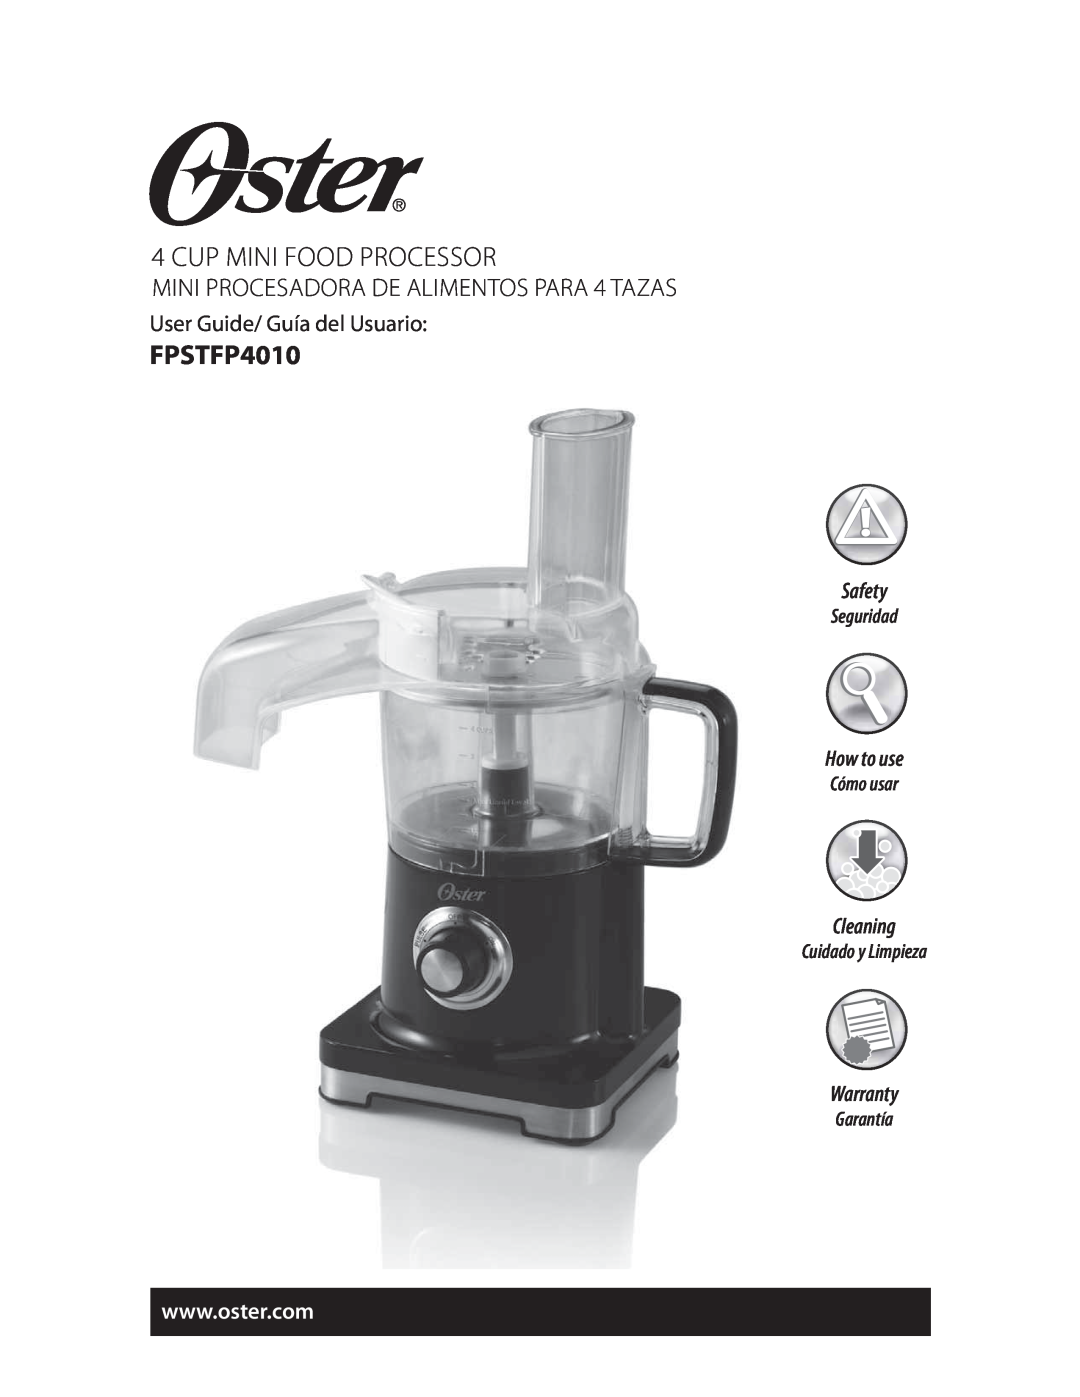 Oster FPSTFP4010 Cup Mini Food Processor, Safety, How to use, Cleaning, Warranty, Seguridad, Cómo usar, Cuidado y Limpieza 